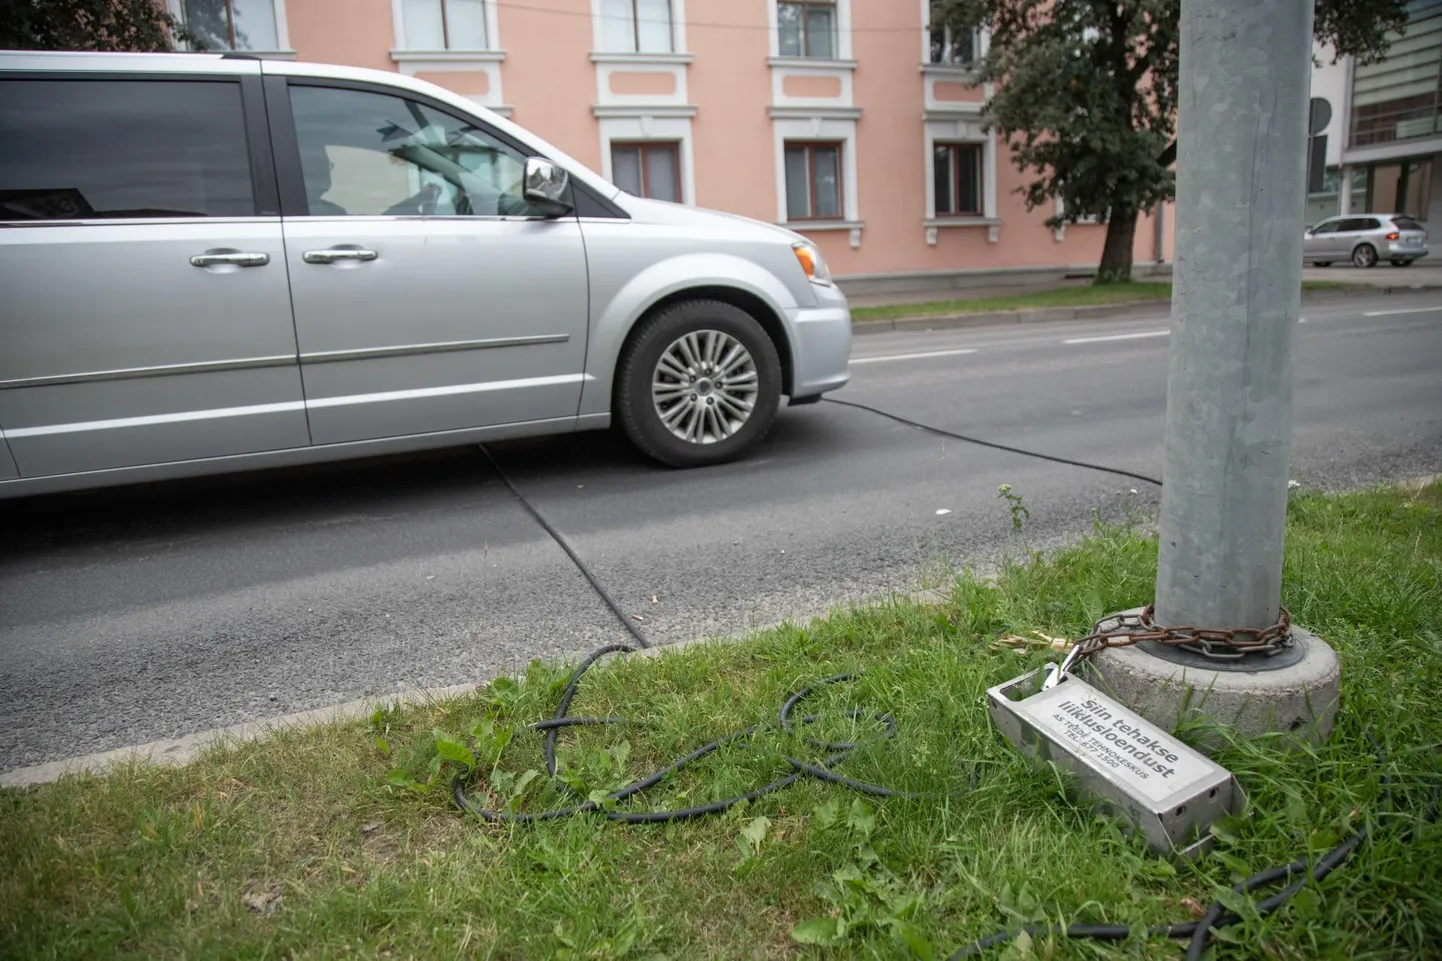 Liiklusloenduriga on Viljandis autode liikumist uuritud ka varasematel aastatel.